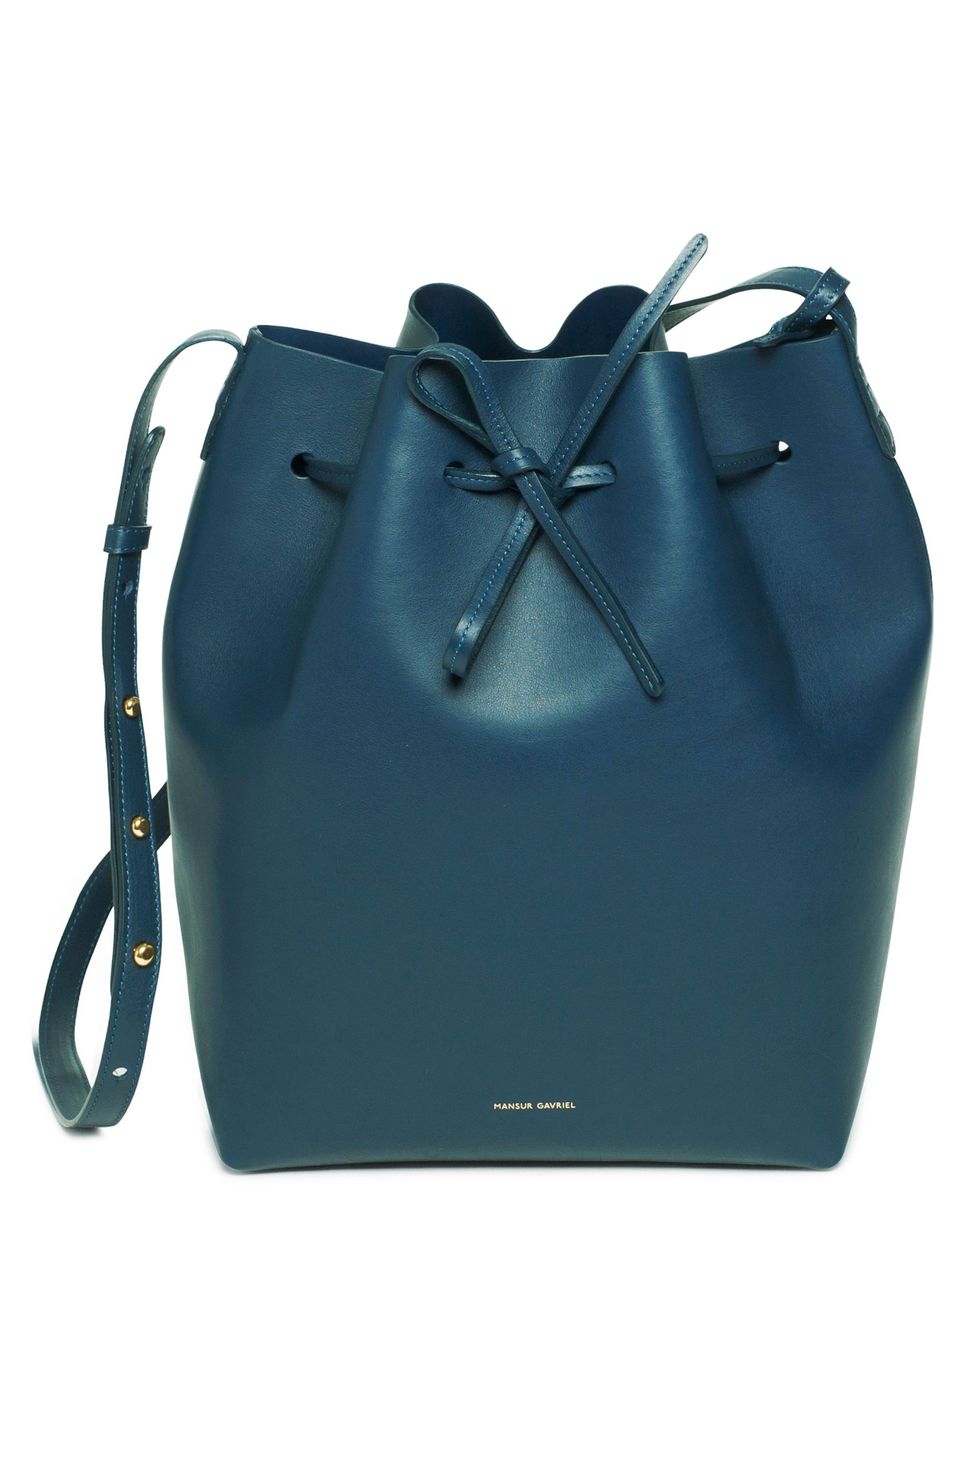 mid-price designer bags, affordable designer bags, cheaper designer handbags, Michael Kors bags, Sophie Hulme bags, Tory Burch bags